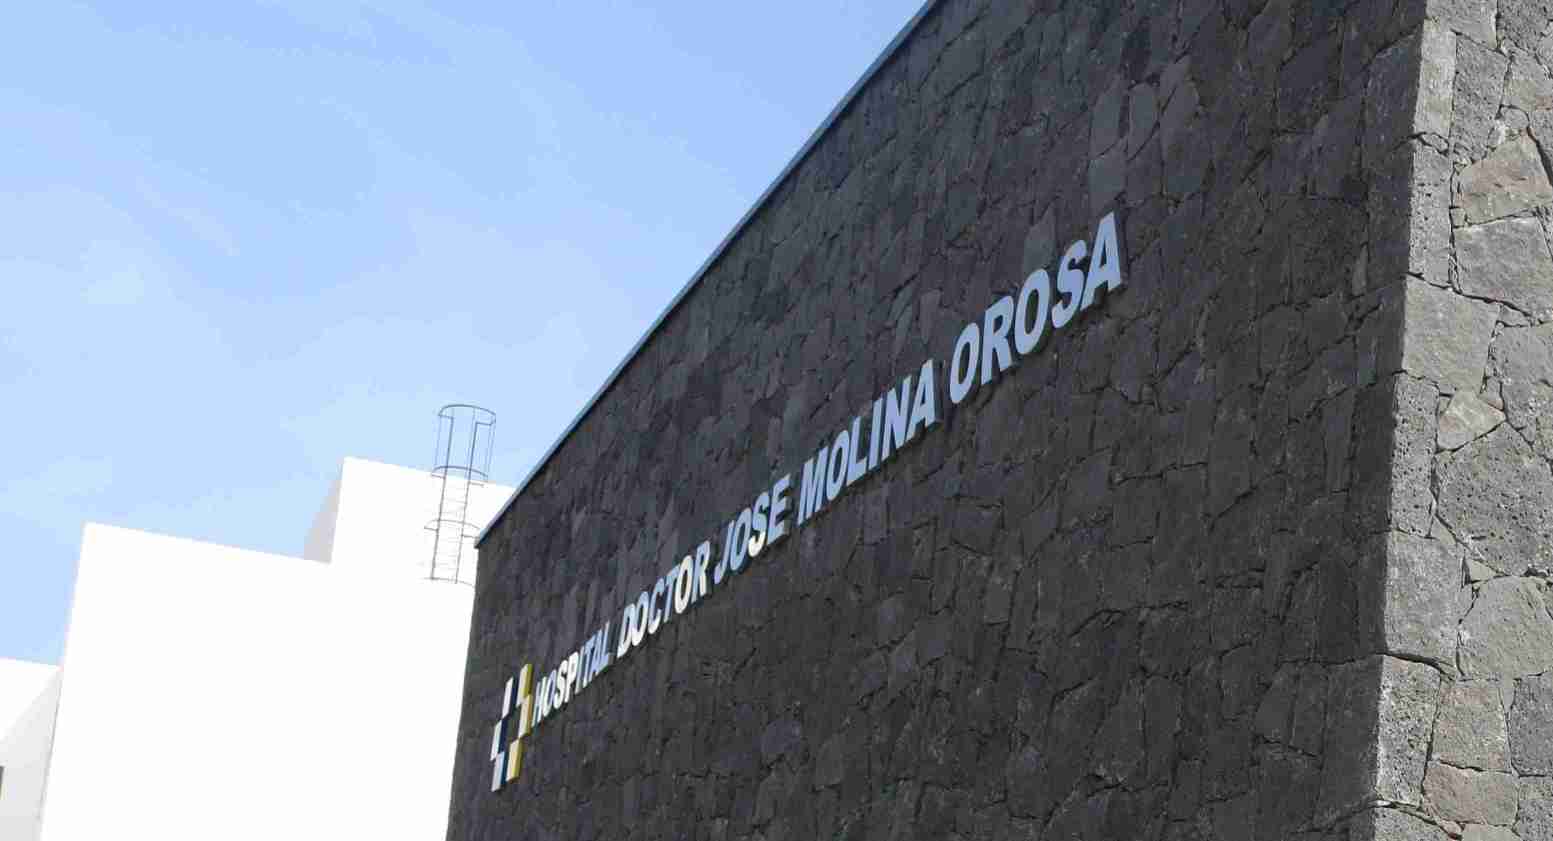 Imagen de un edificio del Hospital José Molina Orosa